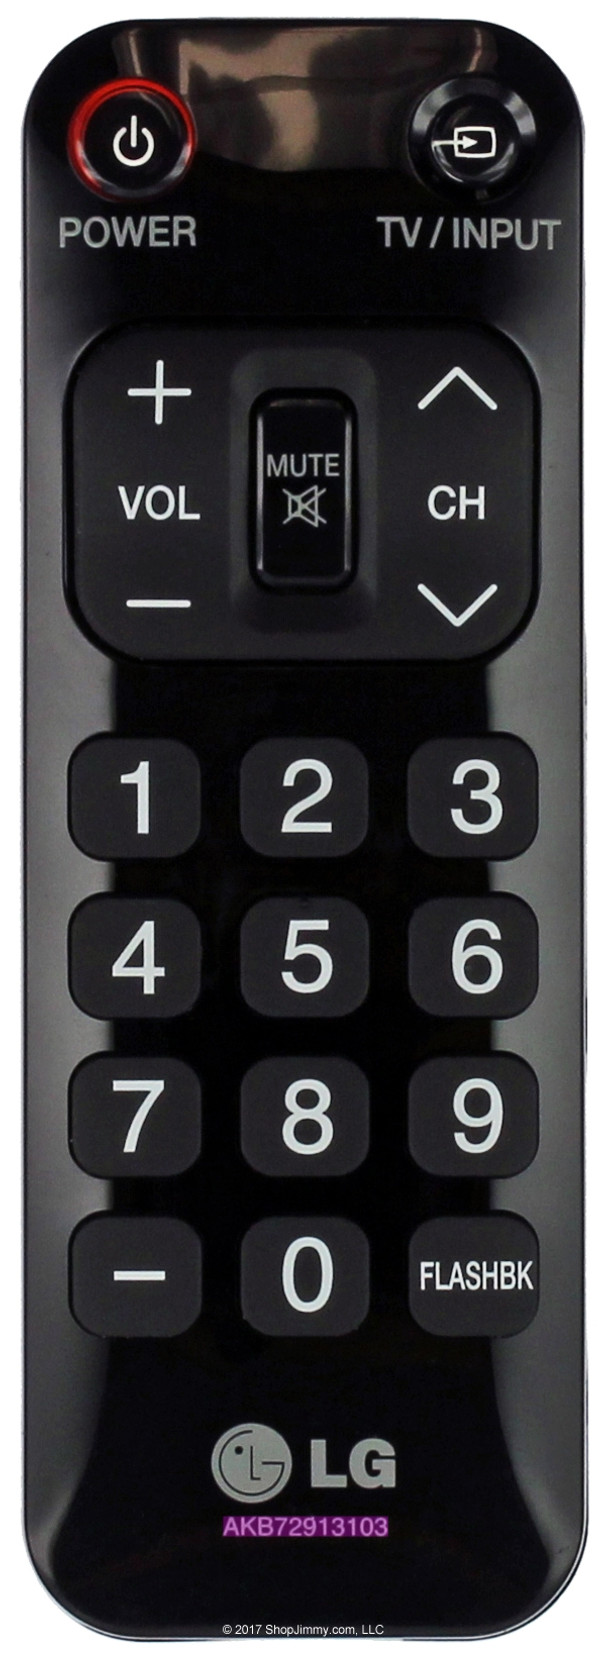 LG AKB72913103 Remote Control